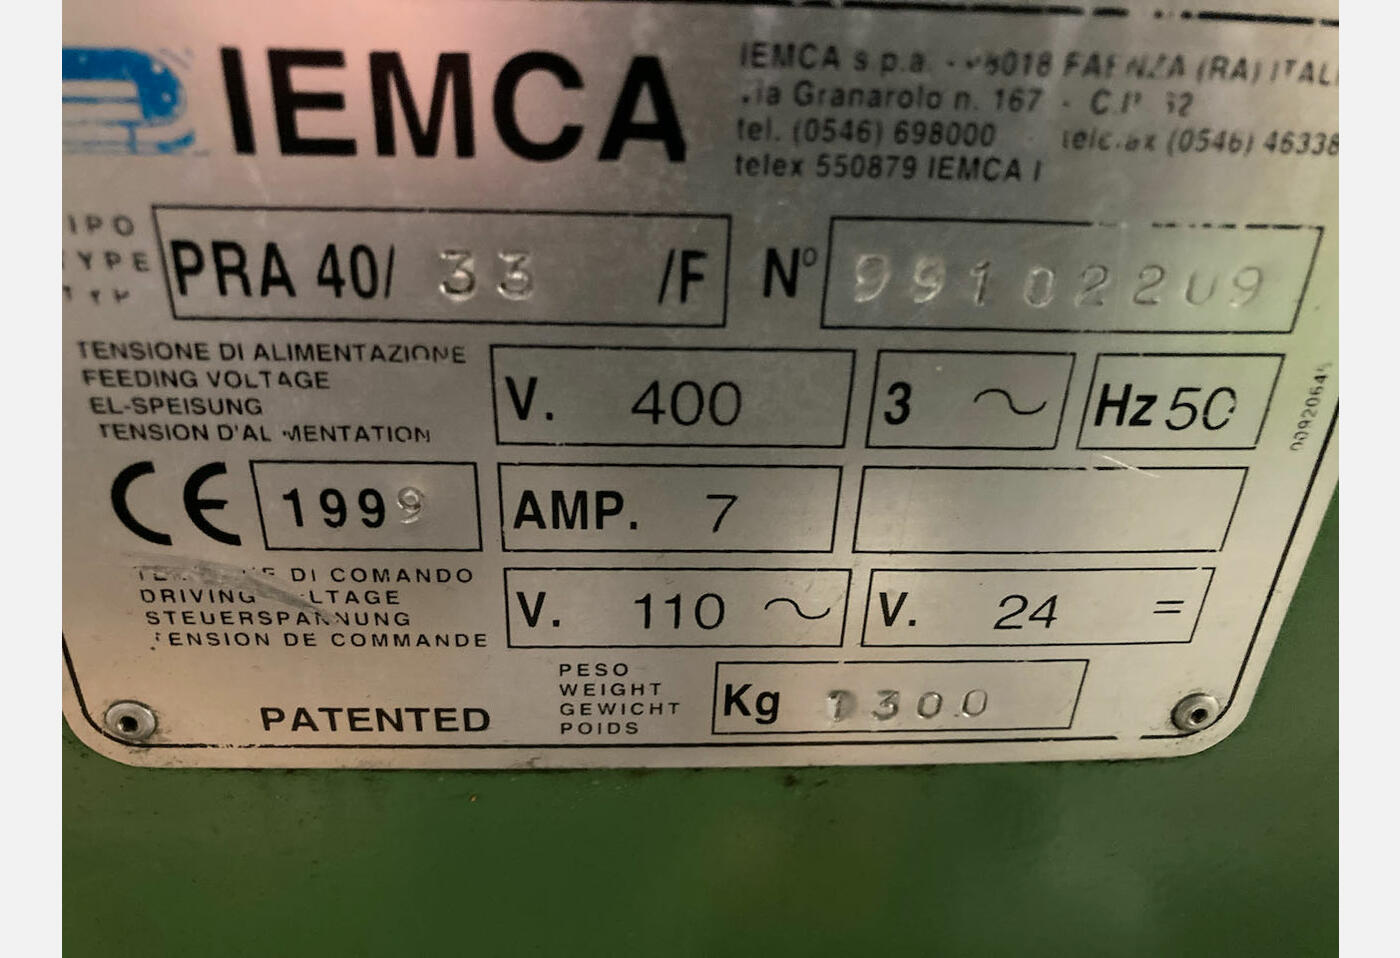 EX01 EMBARREUR IEMCA PRA 40 33F